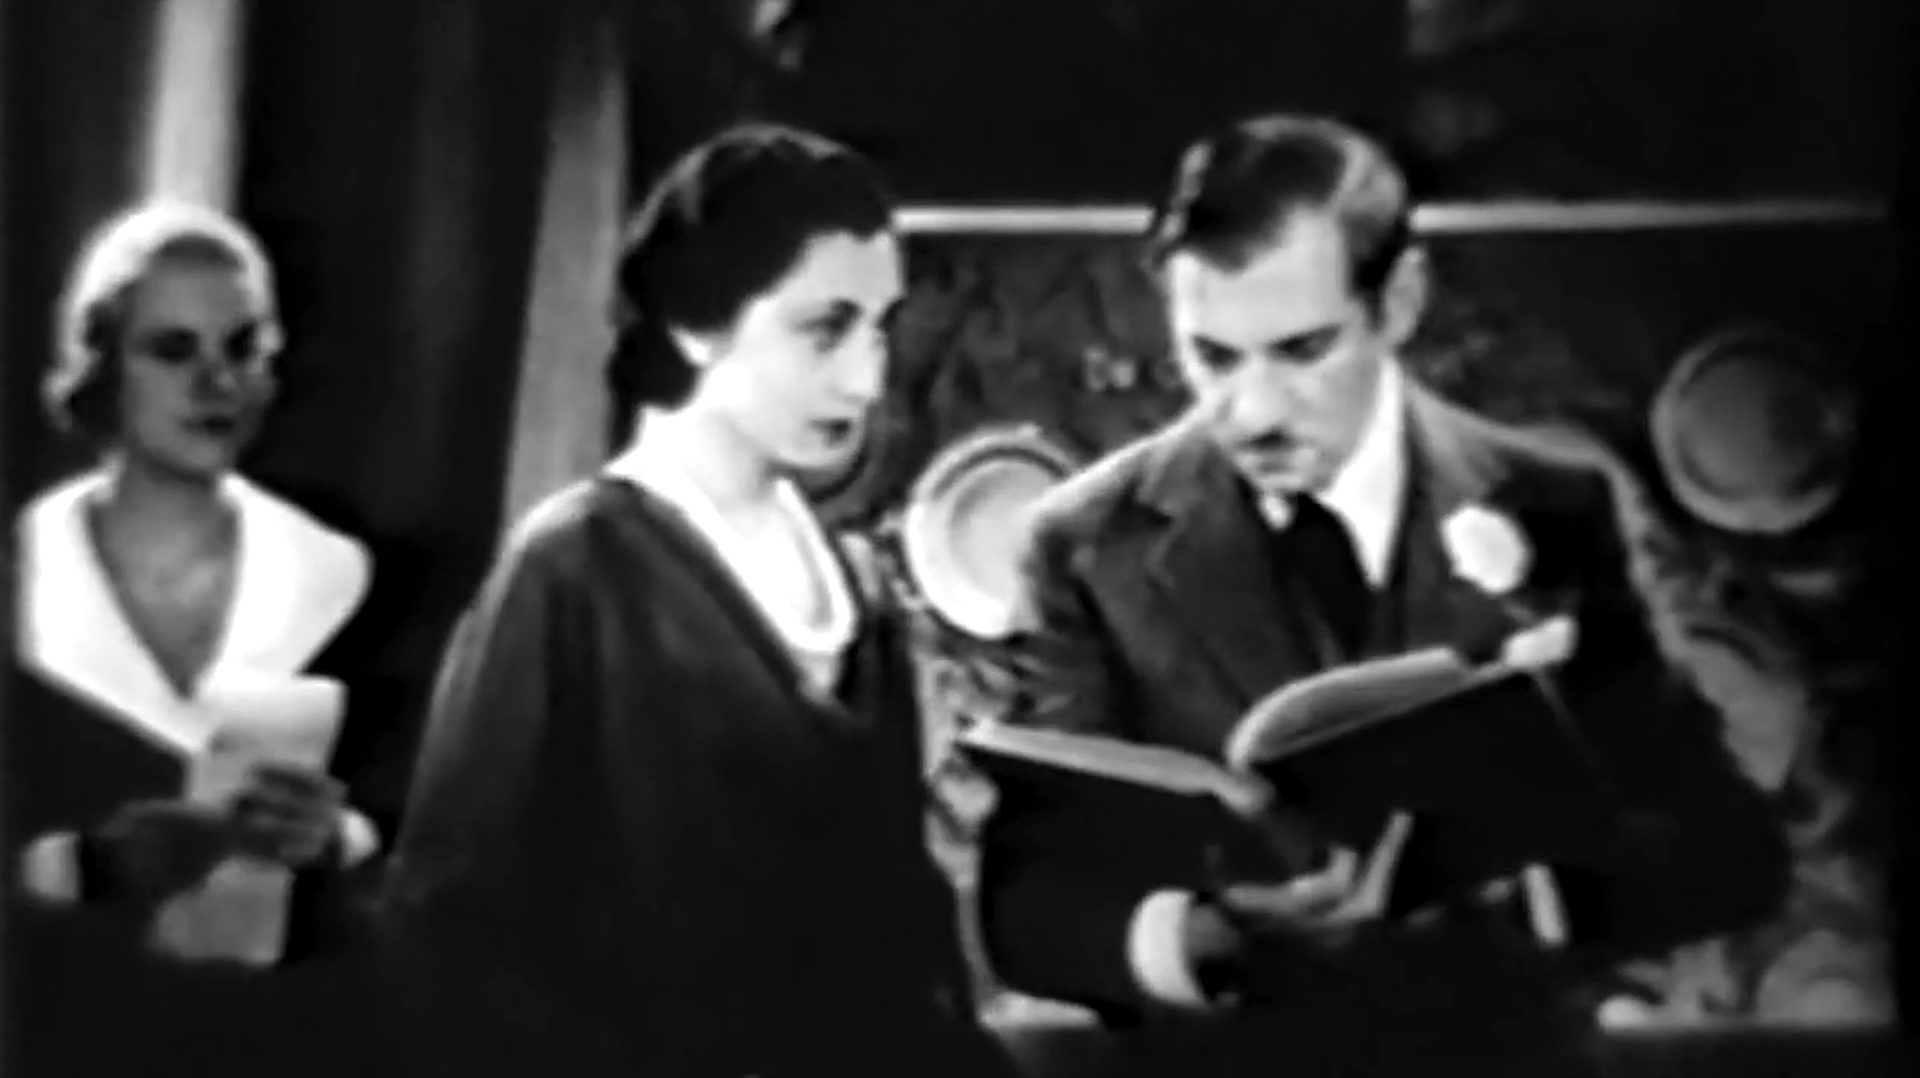 Schwarz-Weiß-Szene mit Aline MacMahon als Sprechcoach beim skeptischen Blick auf Gregory Ratoff als in ein Drehbuch vertiefter Studioboss, im Hintergrund eine wartende Mitarbeiterin.